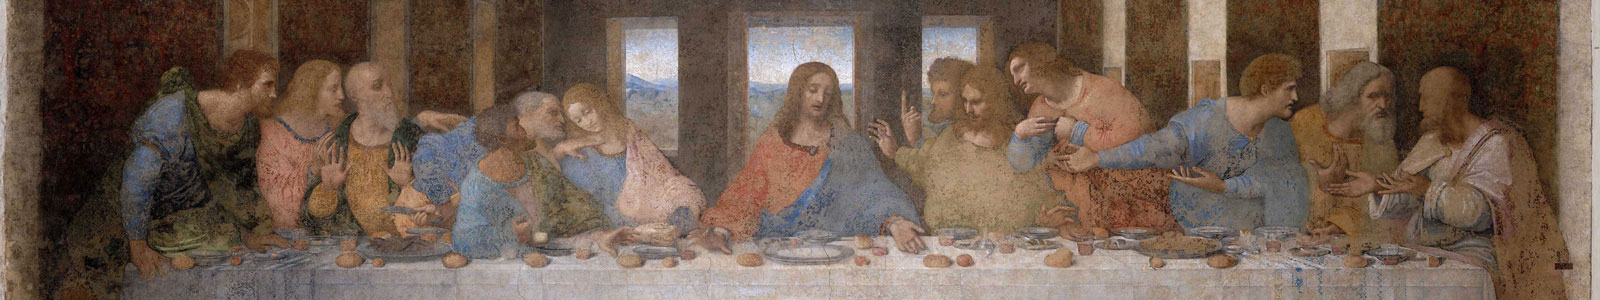 №4322 - Тайная вечеря, фреска (до реставрации), Леонардо да Винчи